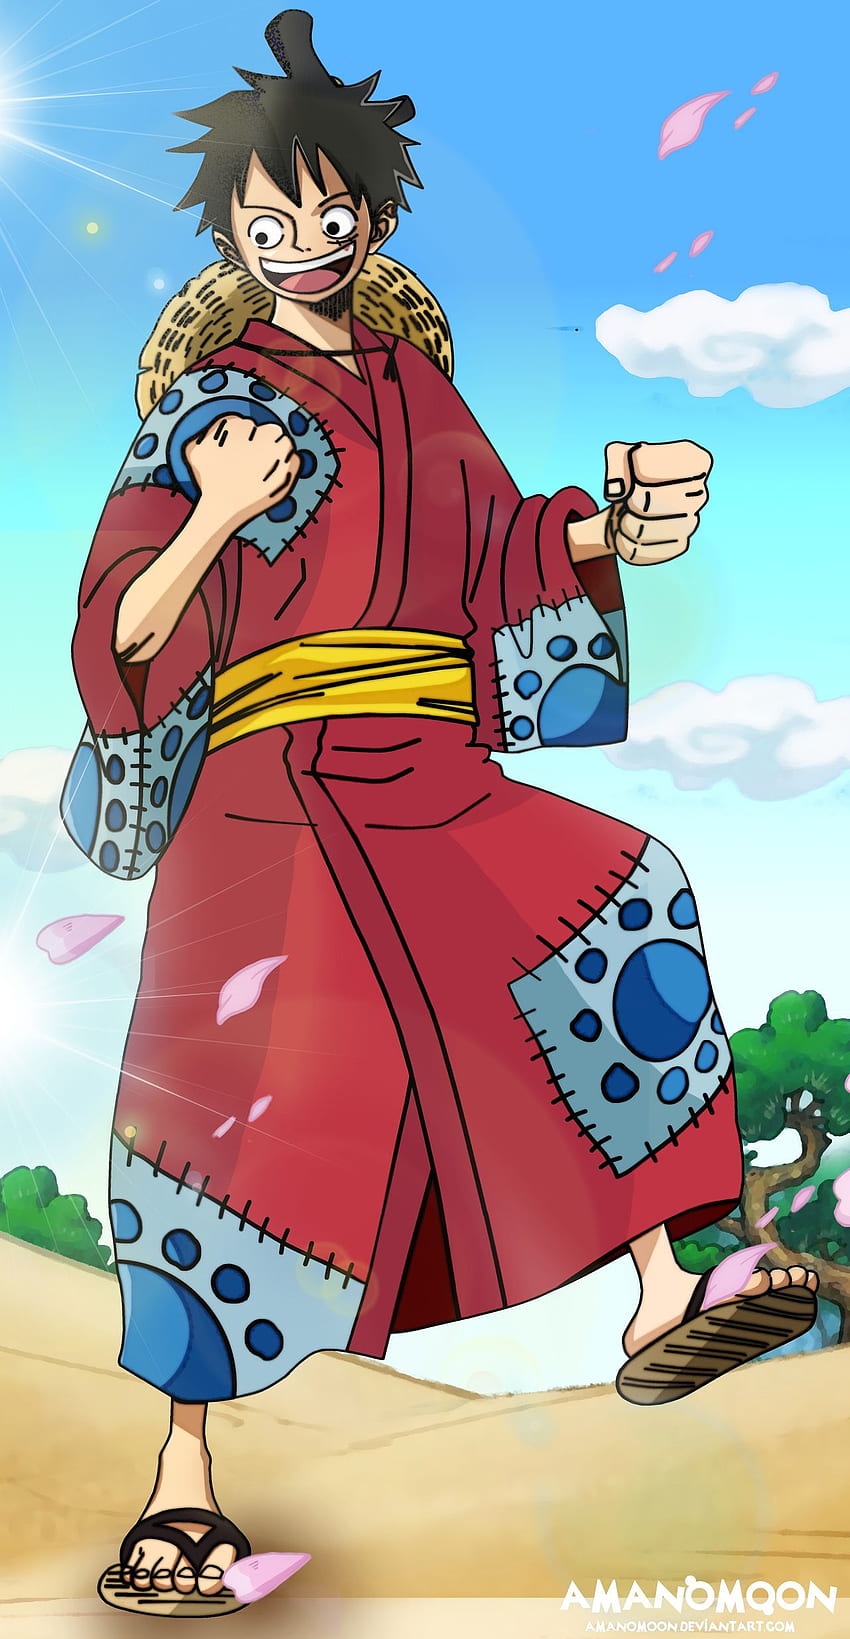 Ghim của Nyjah Hill trên Luffy Hình ảnh Anime Cướp biển Zoro Wano HD  phone wallpaper  Pxfuel